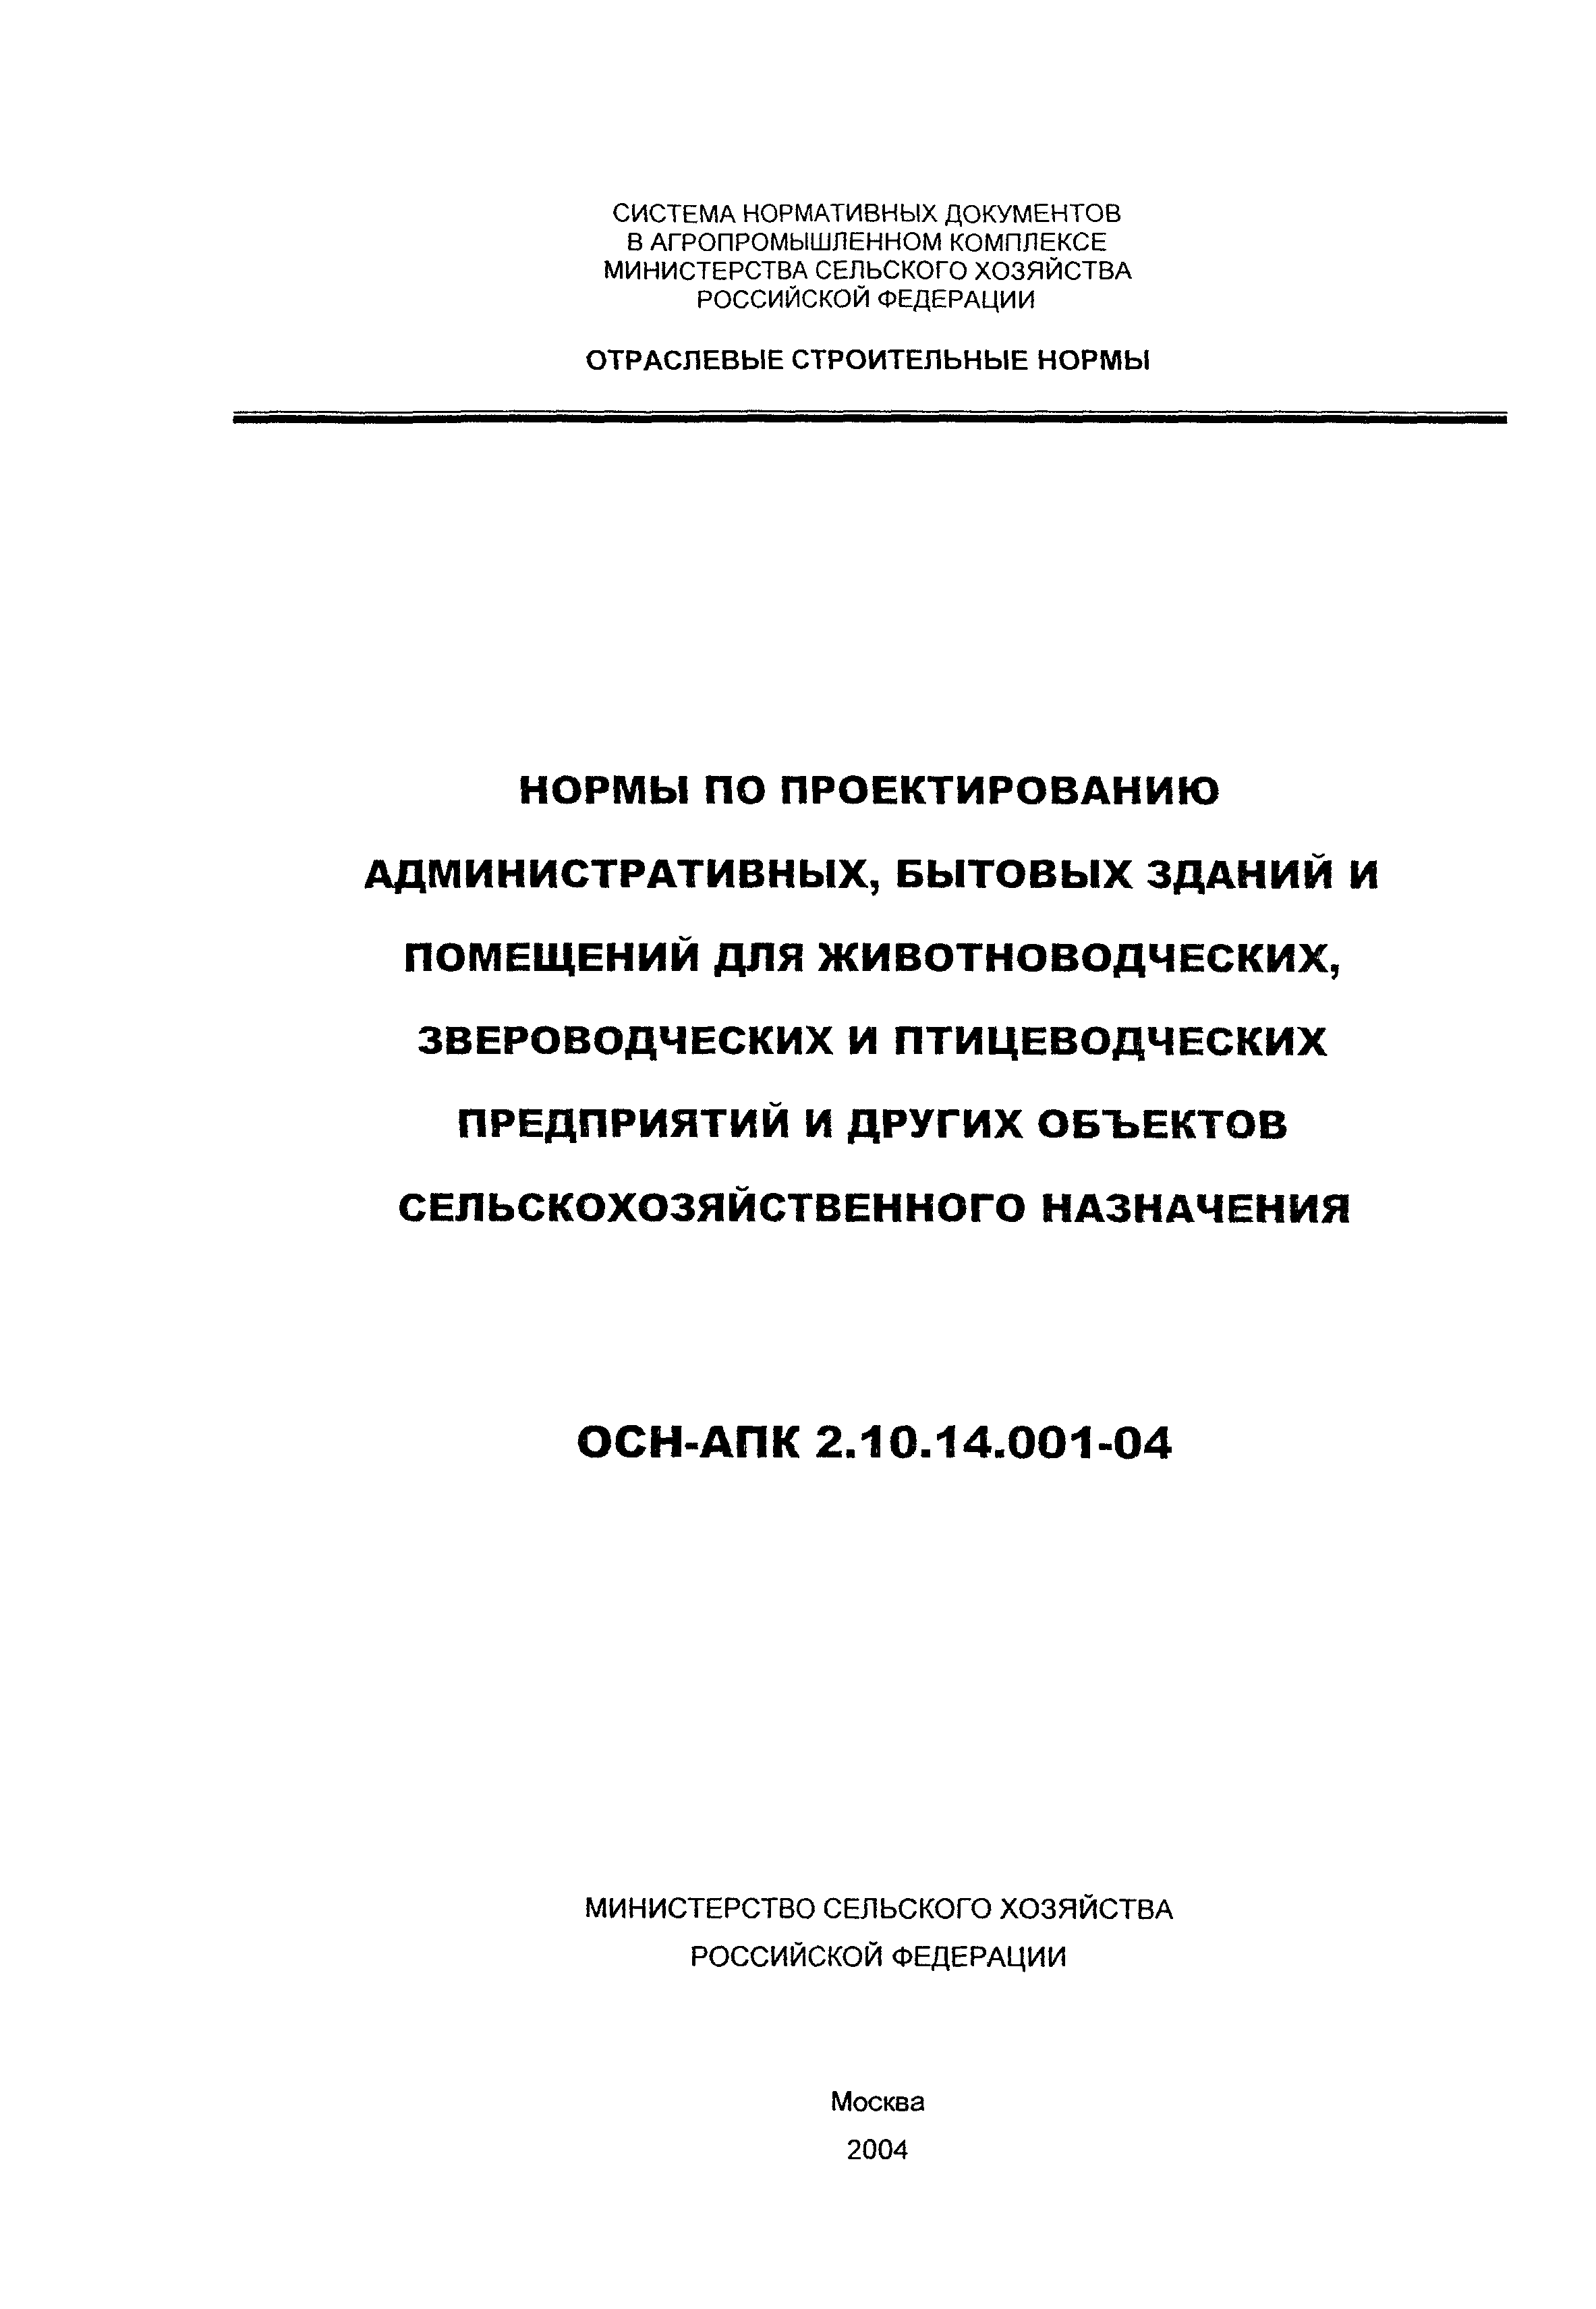 ОСН-АПК 2.10.14.001-04